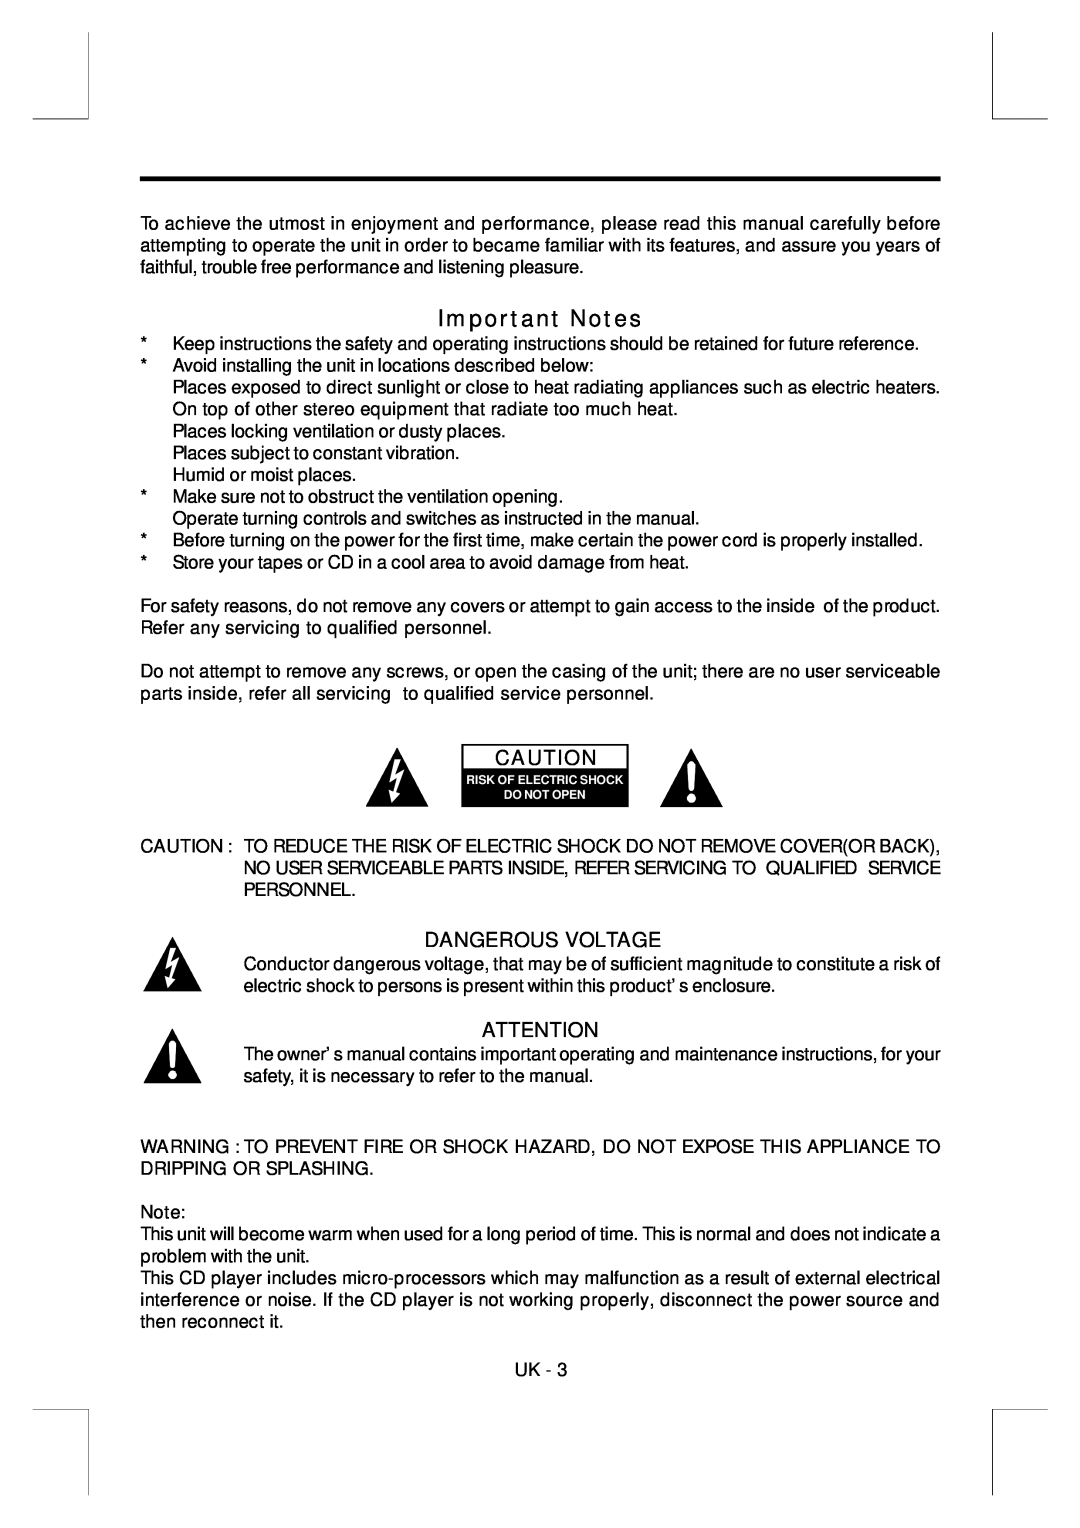 Sylvania SR-748 instruction manual Dangerous Voltage, Important Notes 